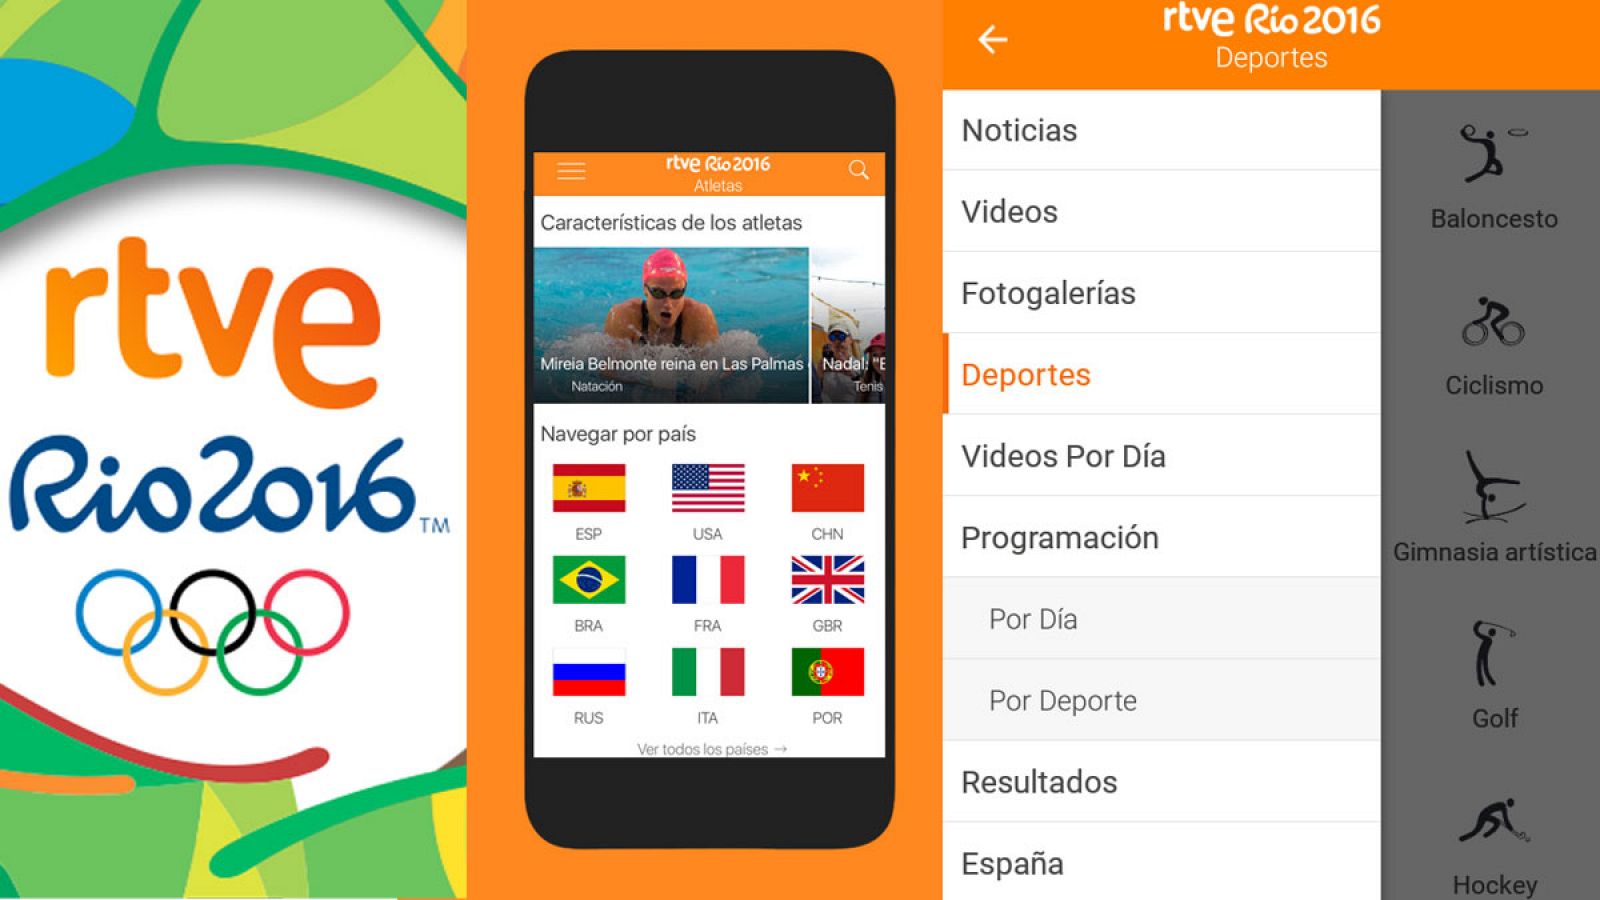 App RTVE Río 2016: 19 señales, calendario, medallero y todas las noticias